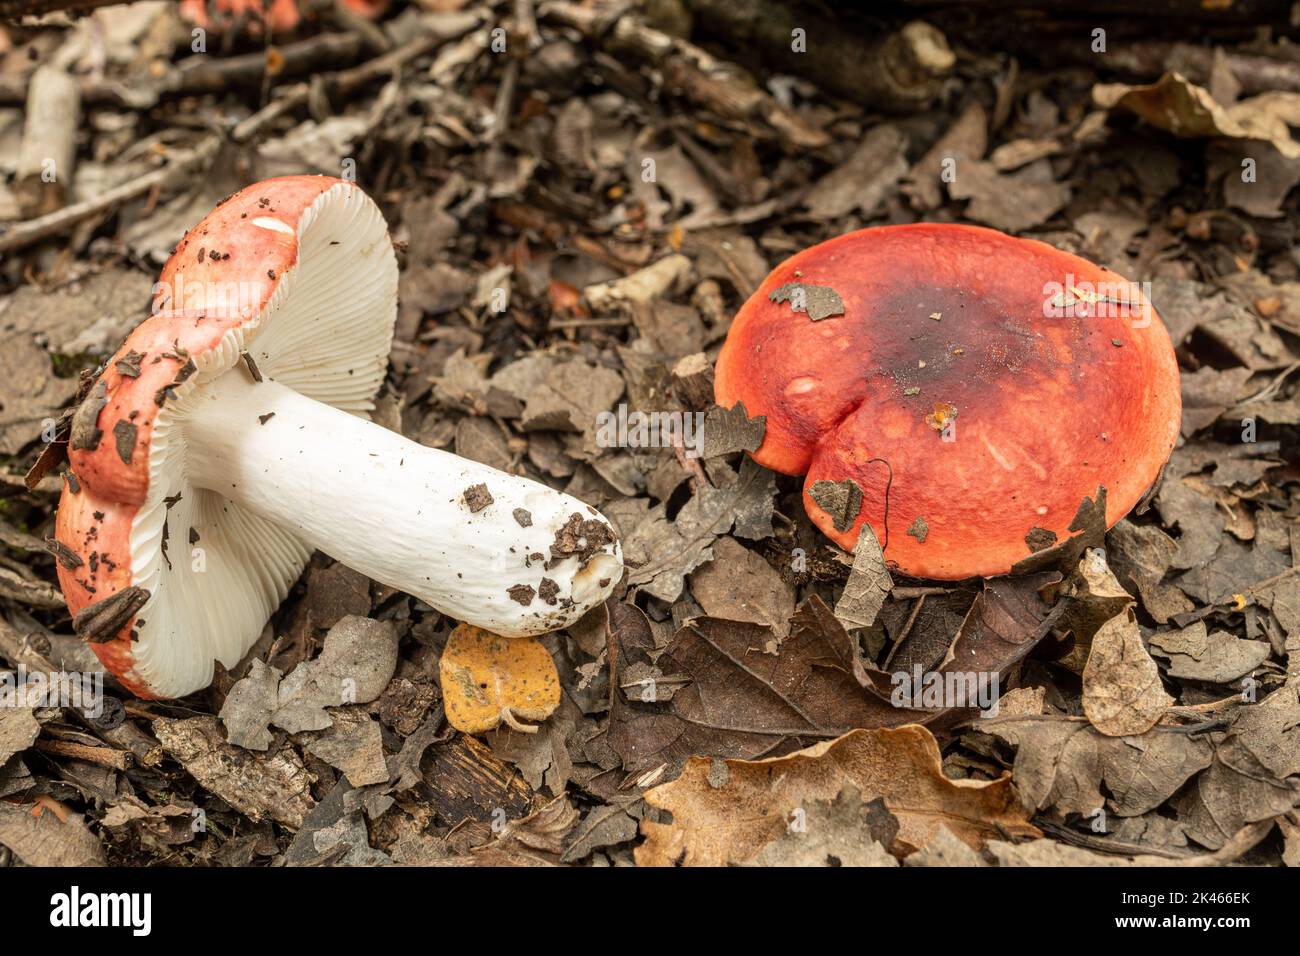 Coloré Russula sp. Champignons toadtabourets de champignons sur le sol des bois pendant l'automne, Hampshire, Angleterre, Royaume-Uni Banque D'Images